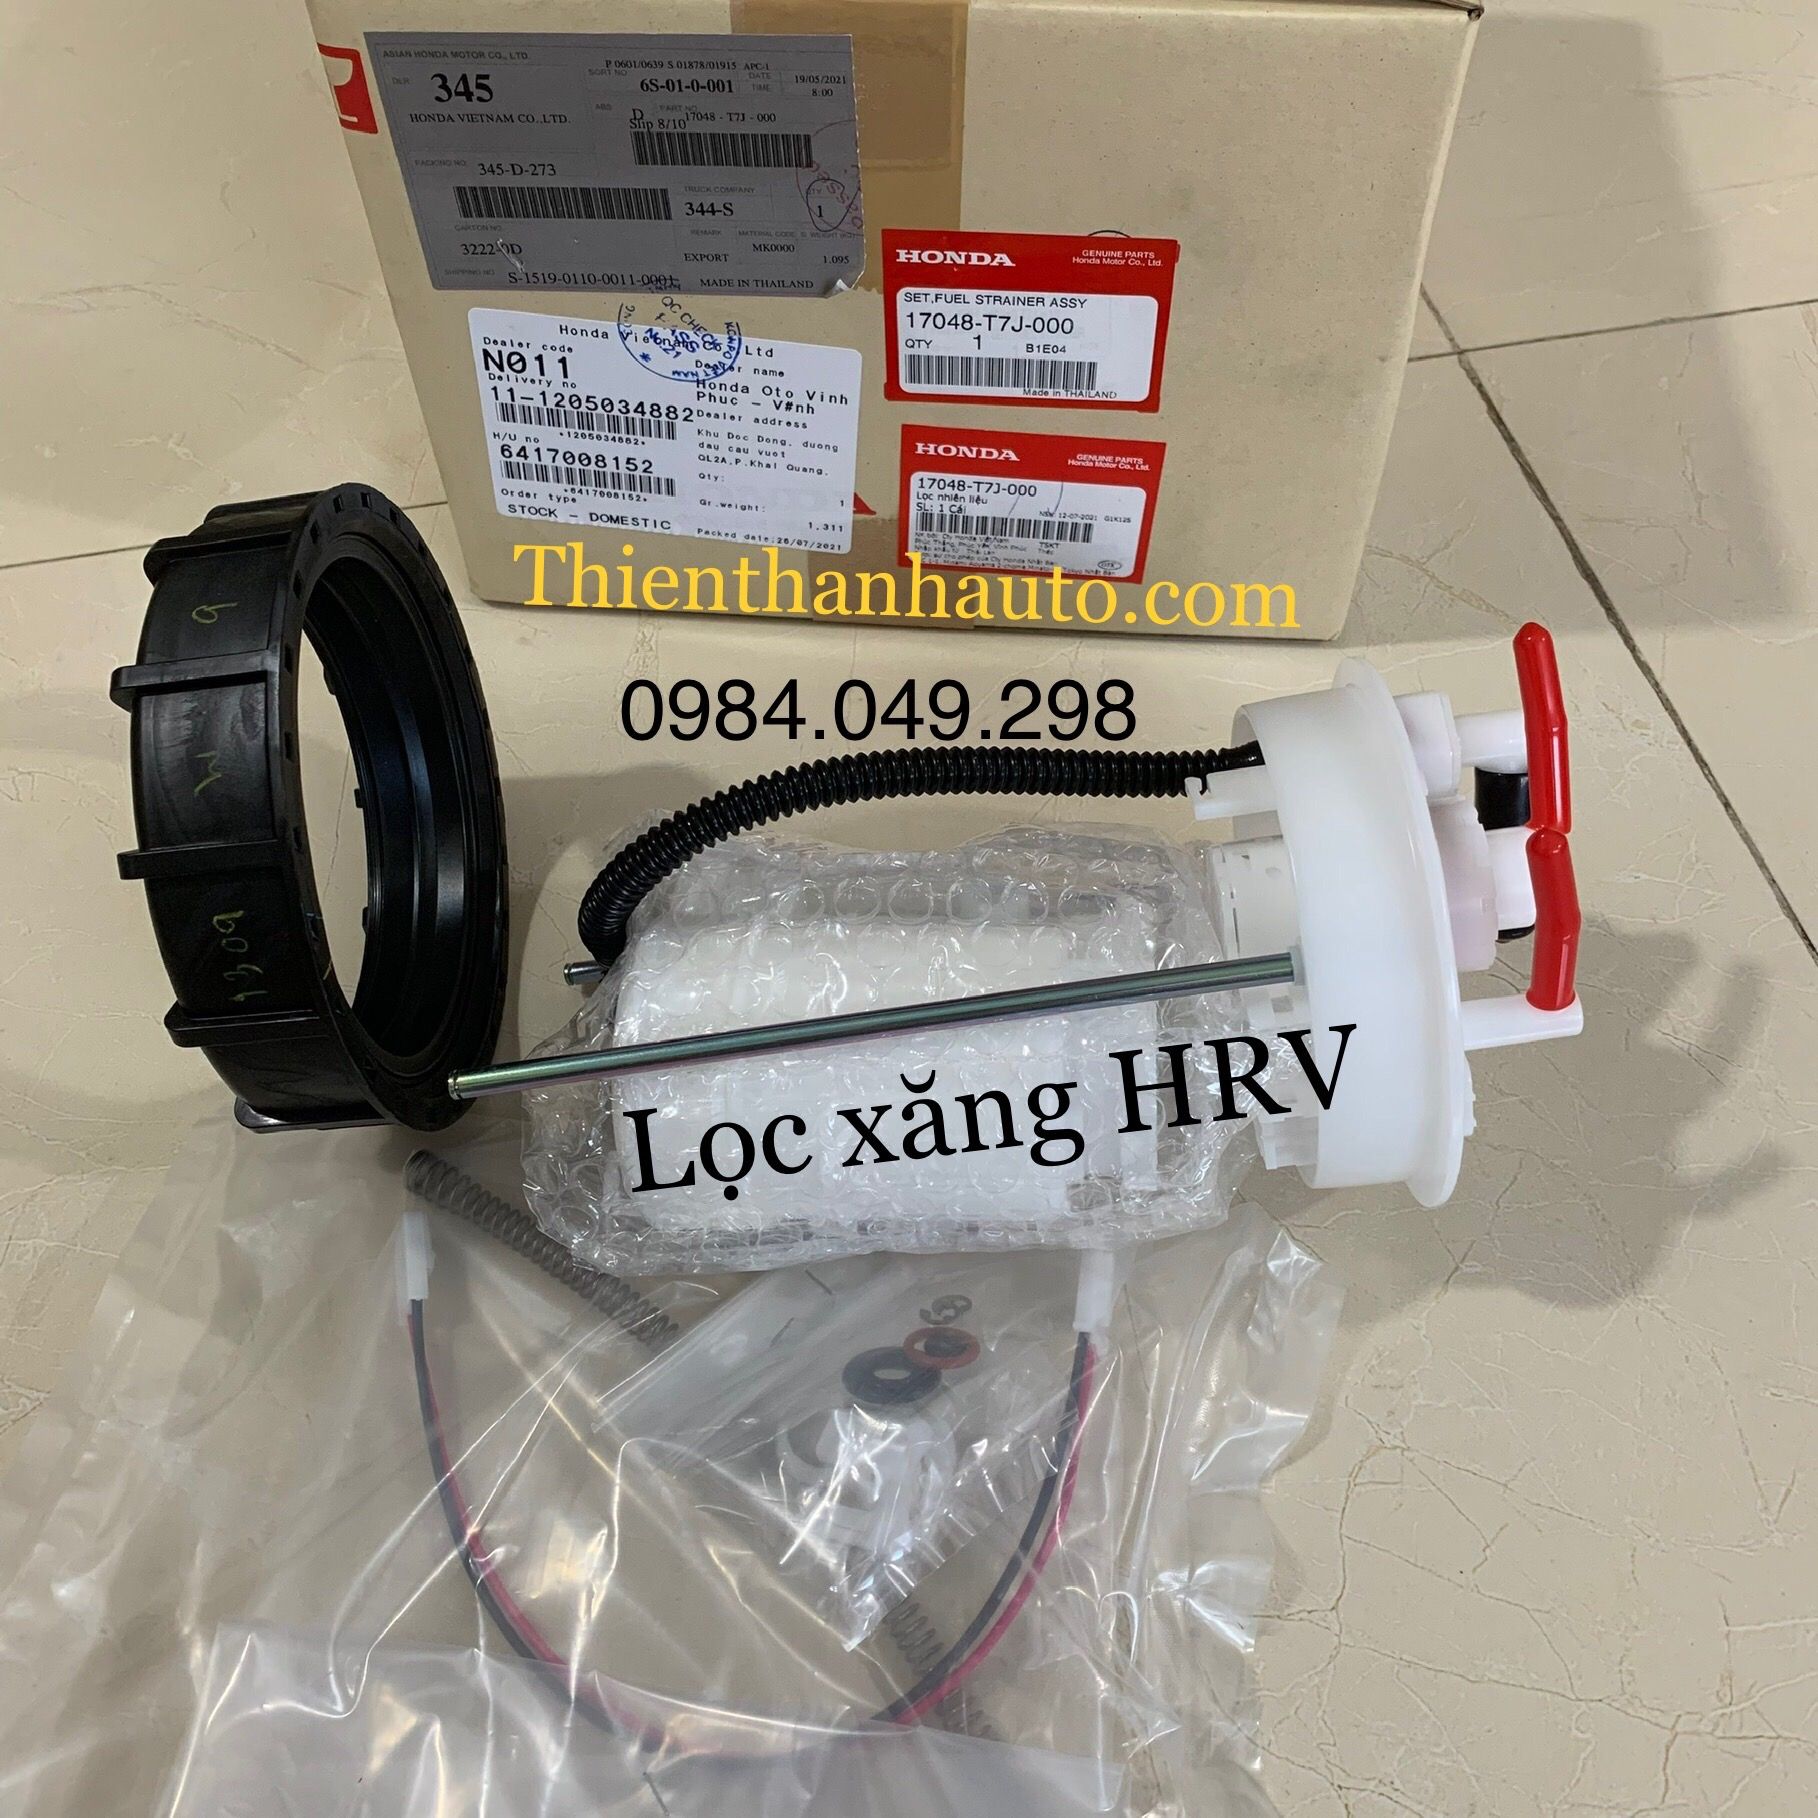 Lọc xăng Honda HRV chính hãng - 17048T7J000 - Phụ tùng ô tô Thiên Thanh